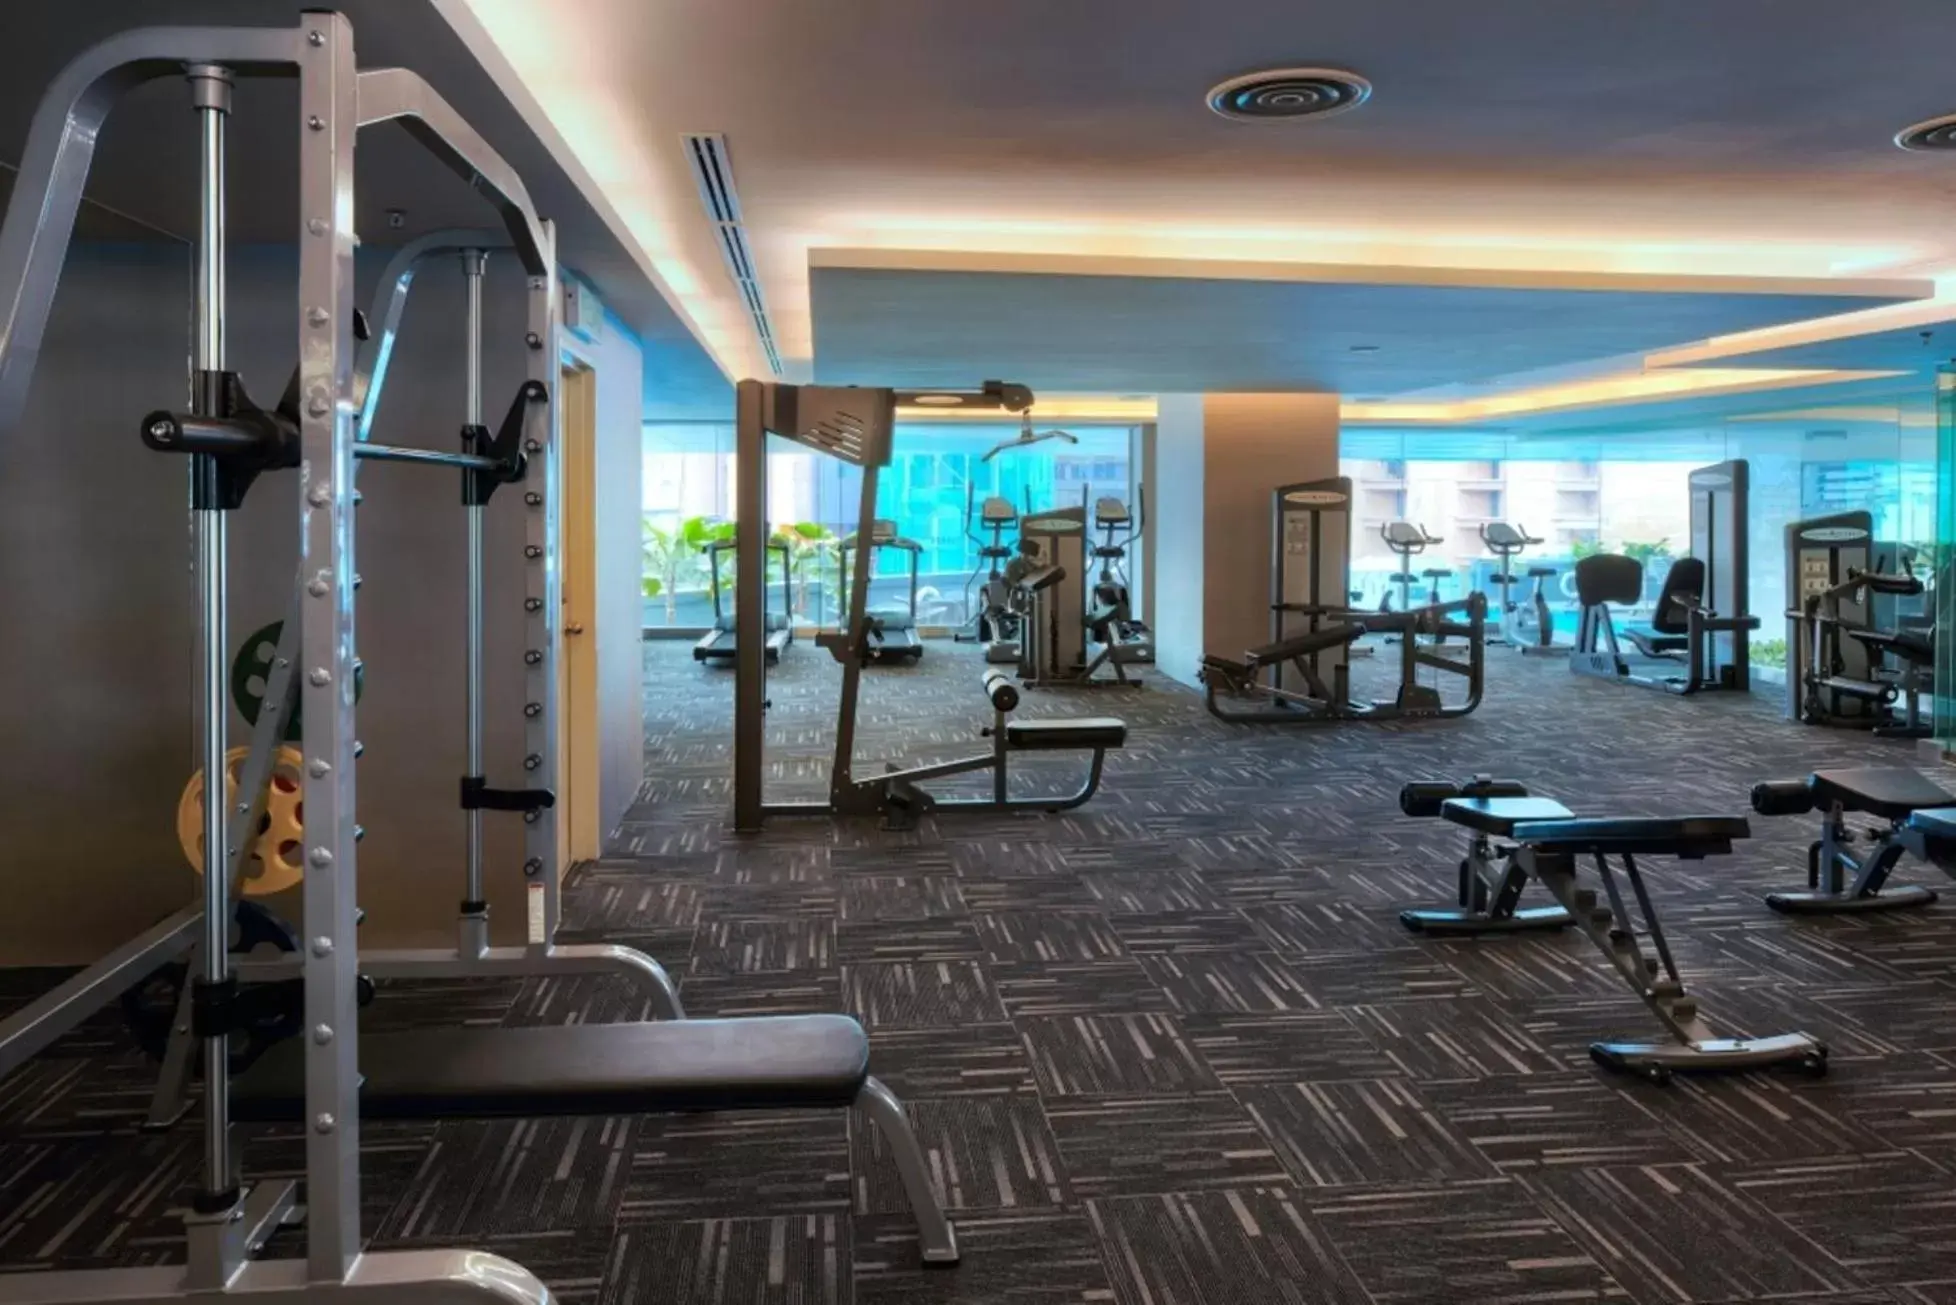 Fitness centre/facilities, Fitness Center/Facilities in Furama Bukit Bintang, Kuala Lumpur